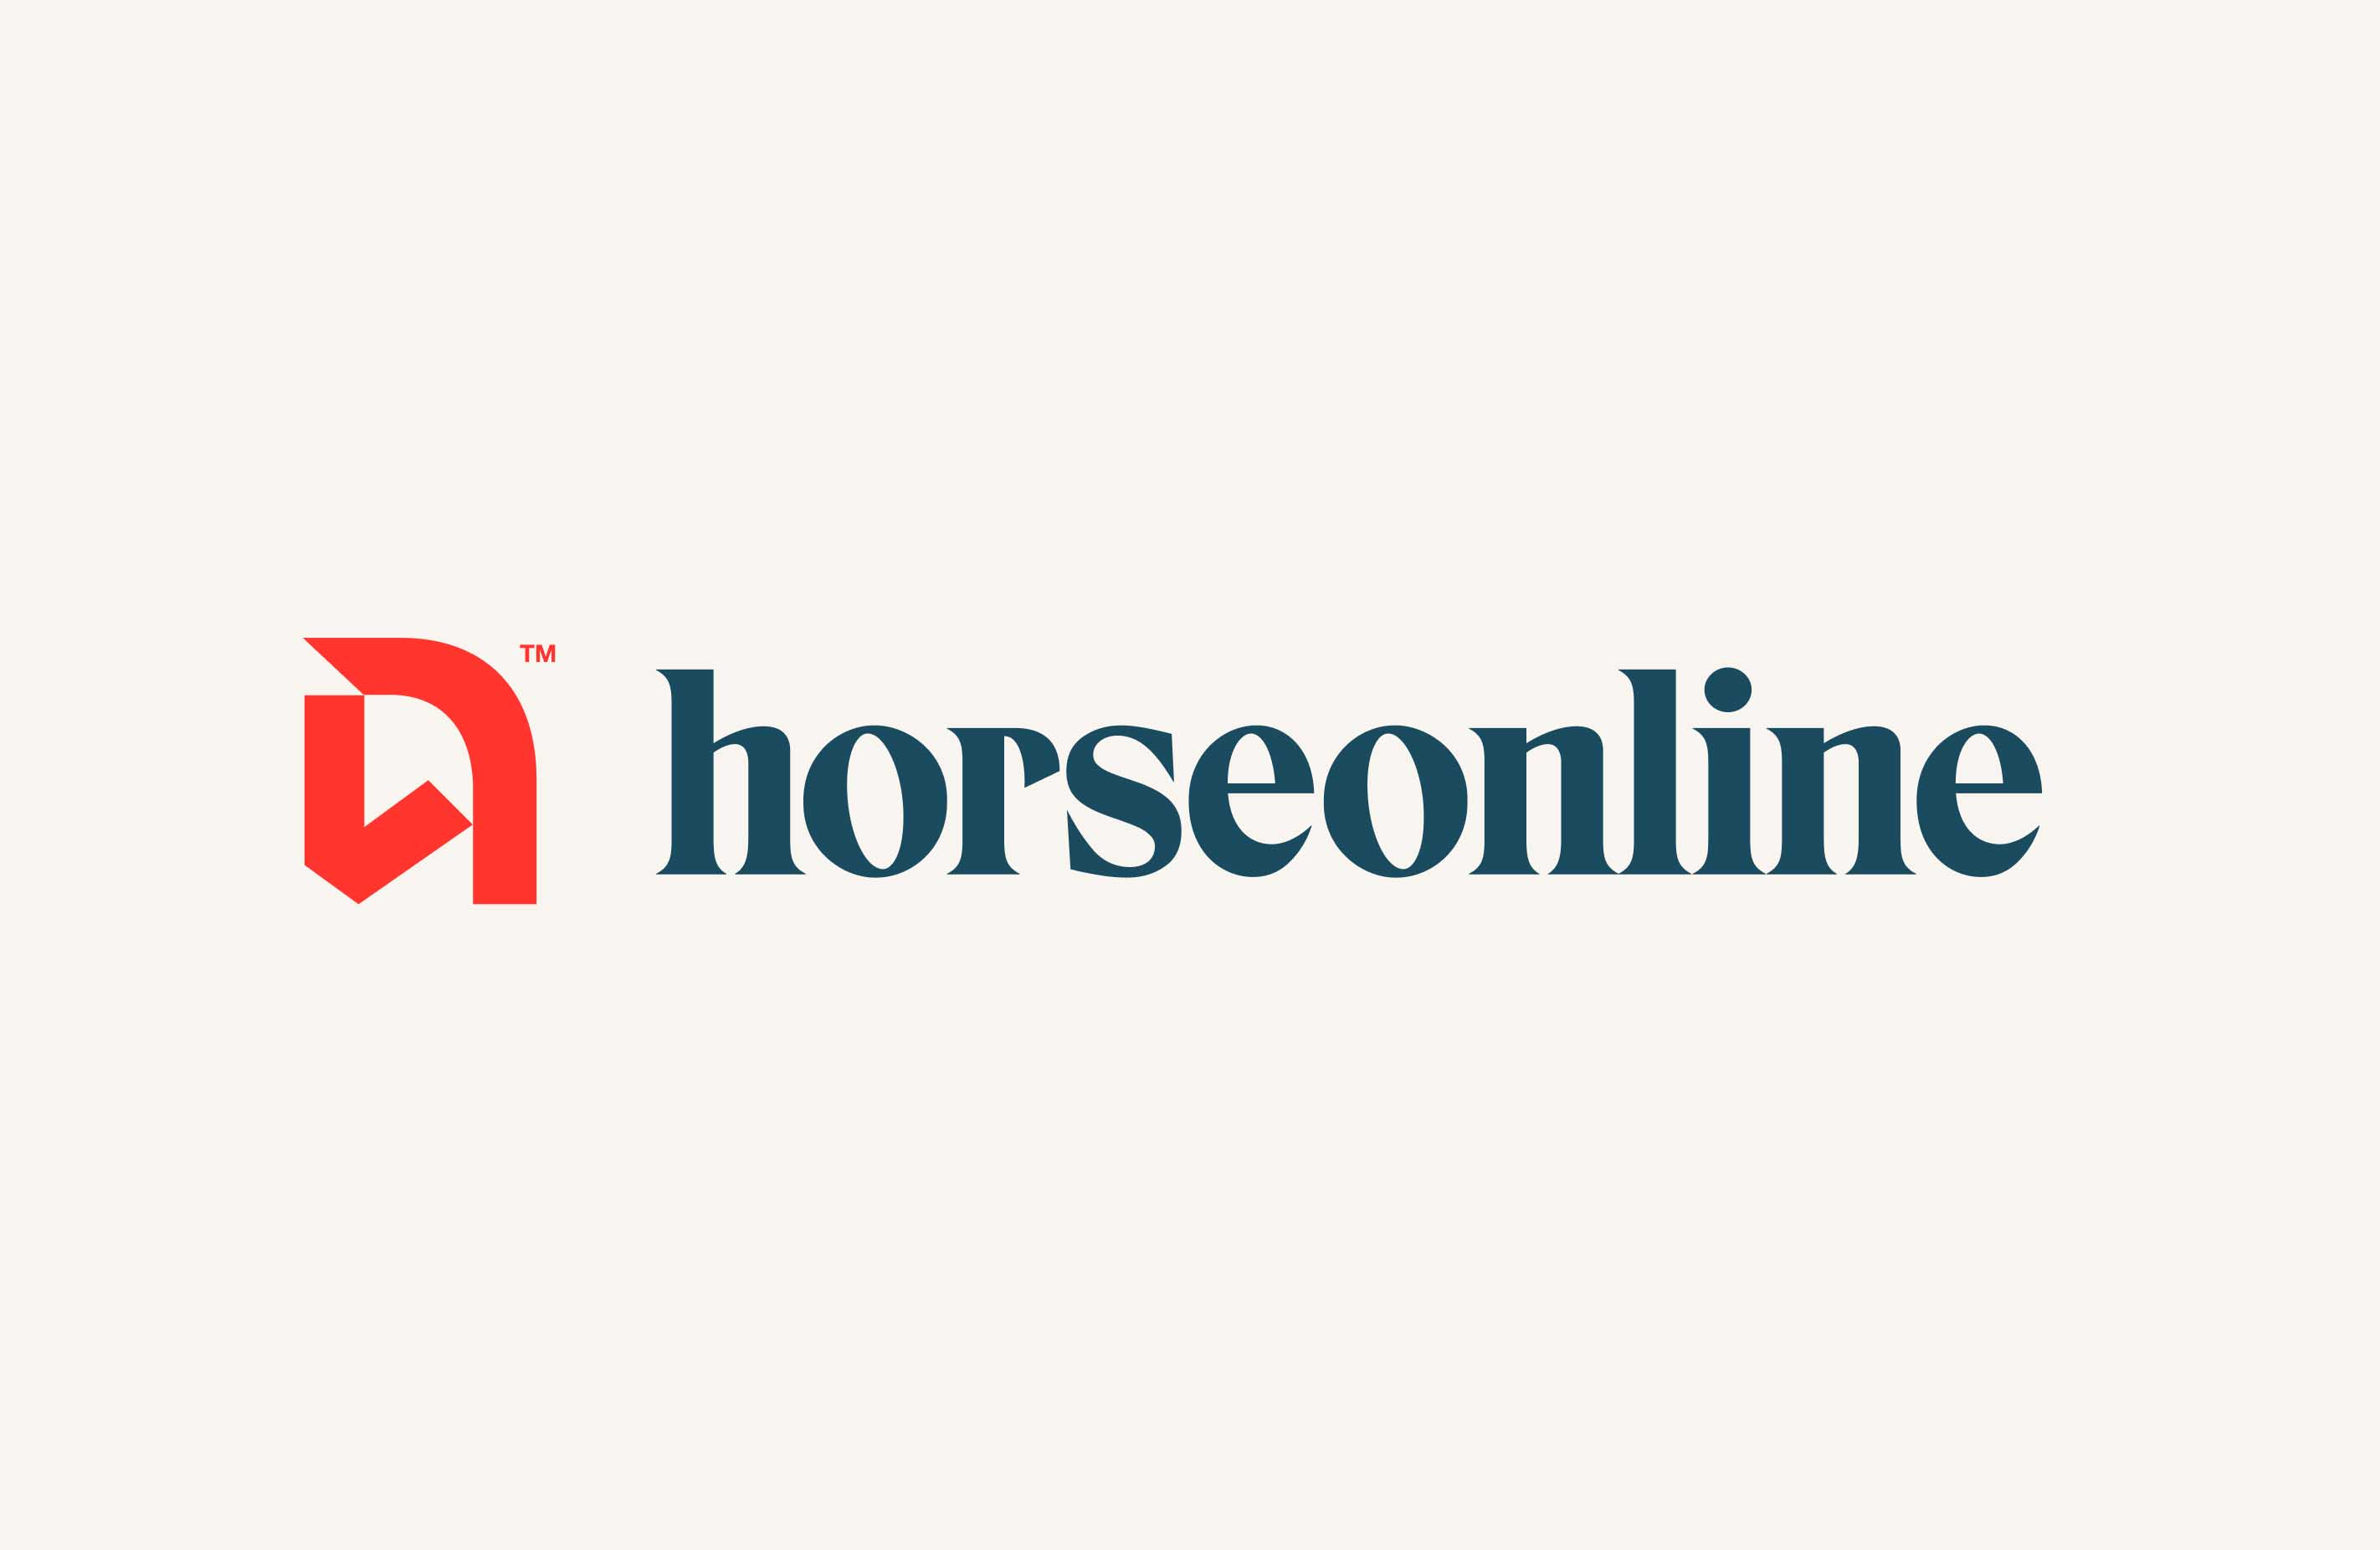 Horseonline Logotype